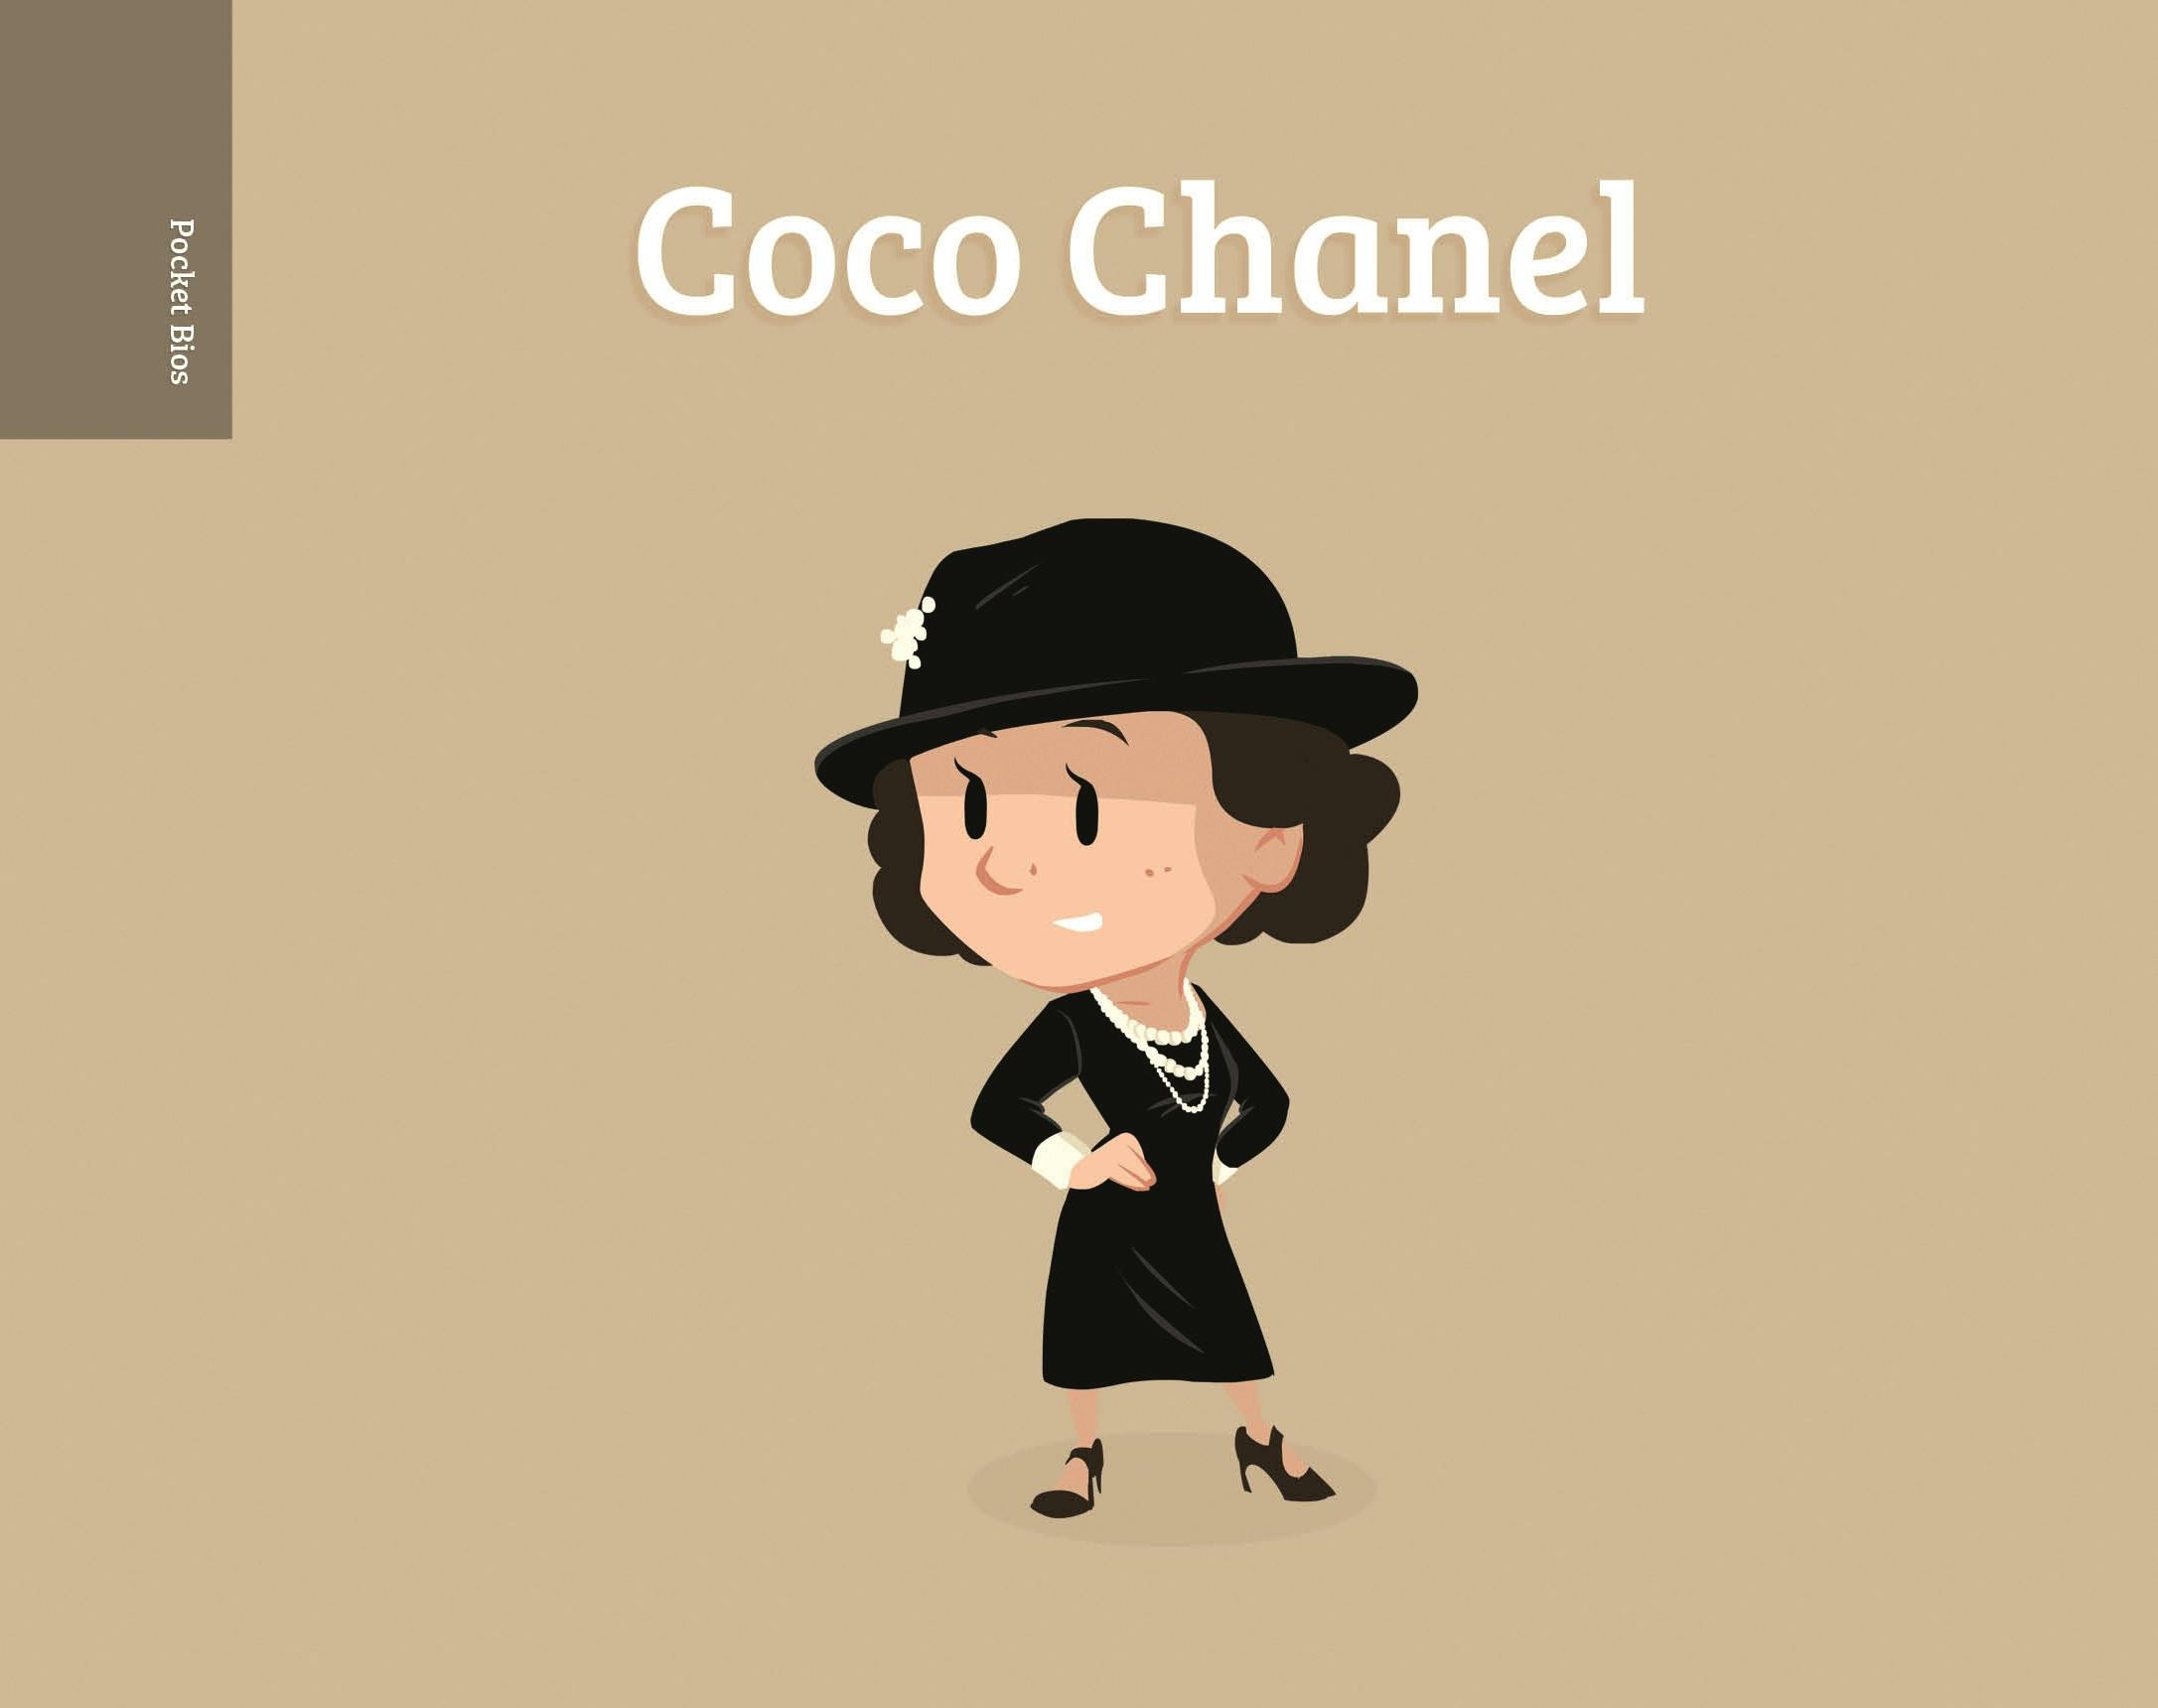 Coco Chanel - French Fashion Designer & Businesswoman, Mini Bio